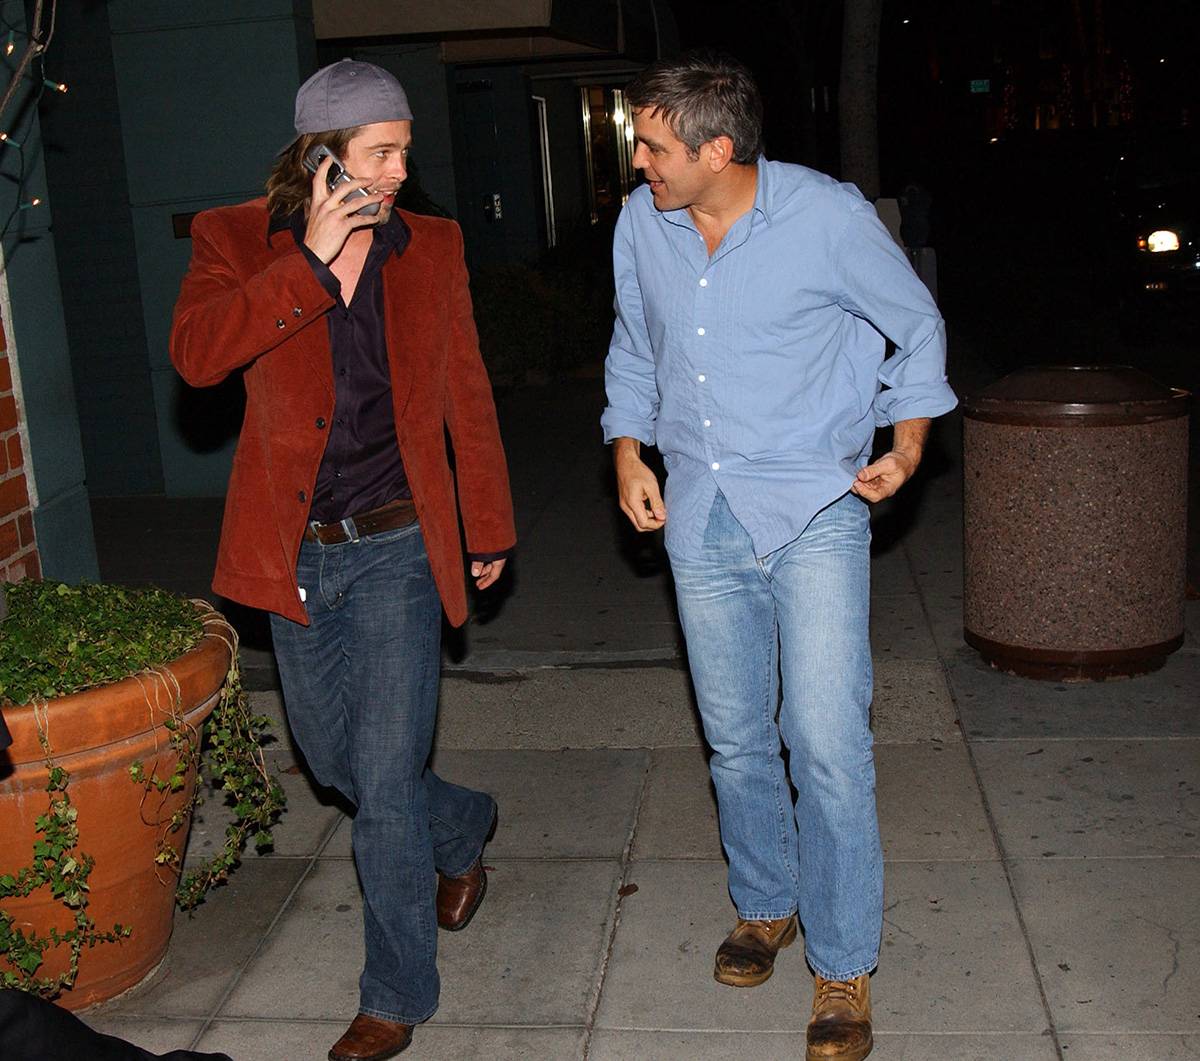 Historia przyjaźni Brada Pitta i Georgea Clooneya. Jak długo trwa przyjaźń Brada Pitta i Georgea Clooneya? Czy zmieniła się od początku ich znajomości? Oto krótka historia hollywoodzkiej pary aktorów.